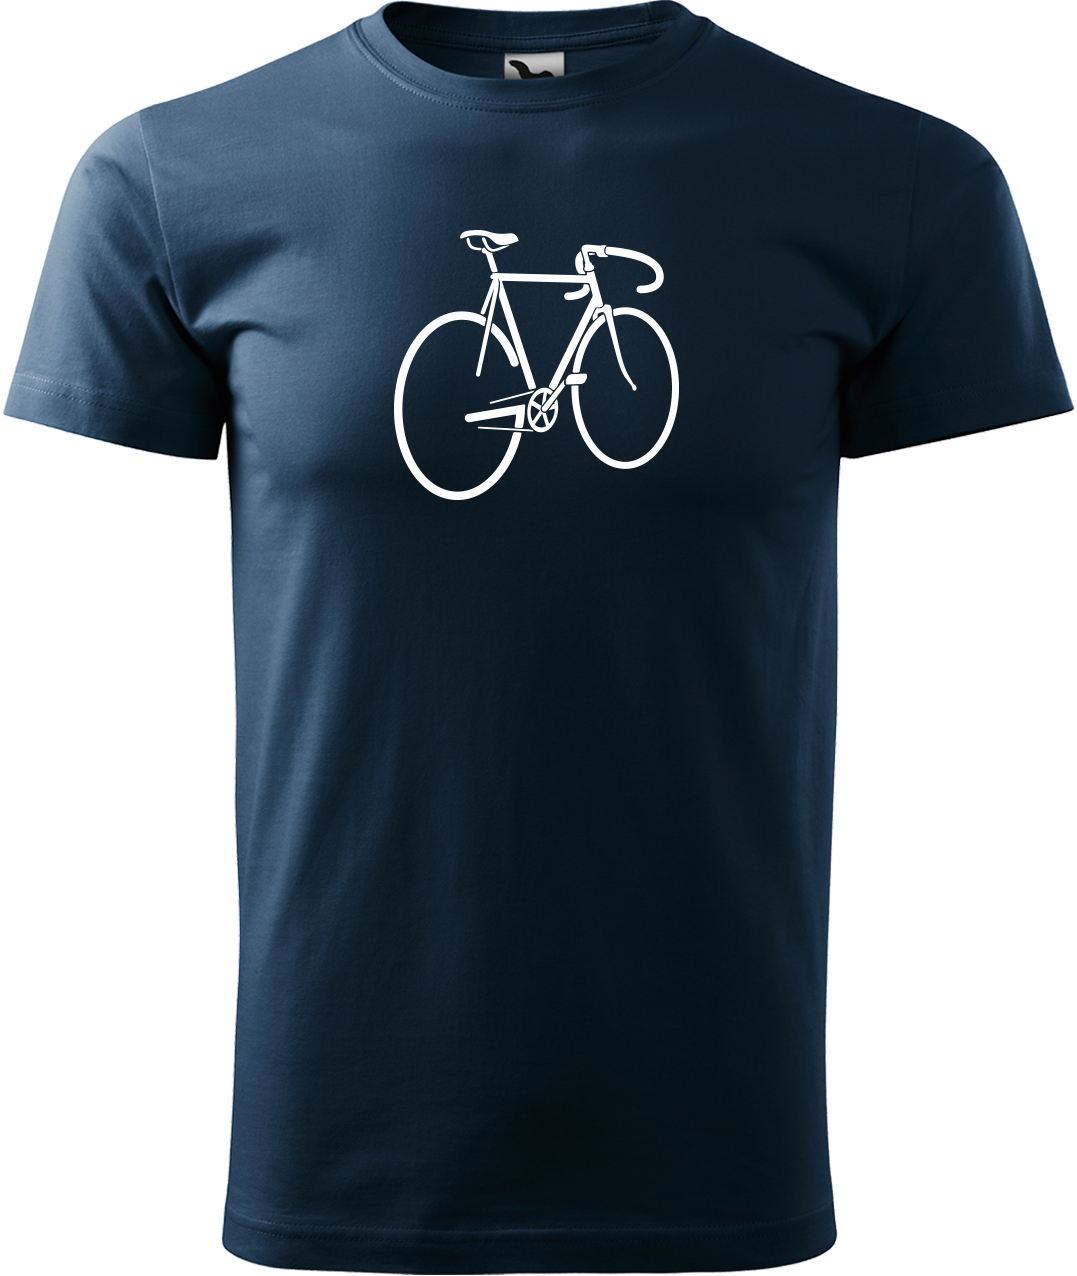 Pánské tričko s kolem - Pánské kolo Velikost: 3XL, Barva: Námořní modrá (02)